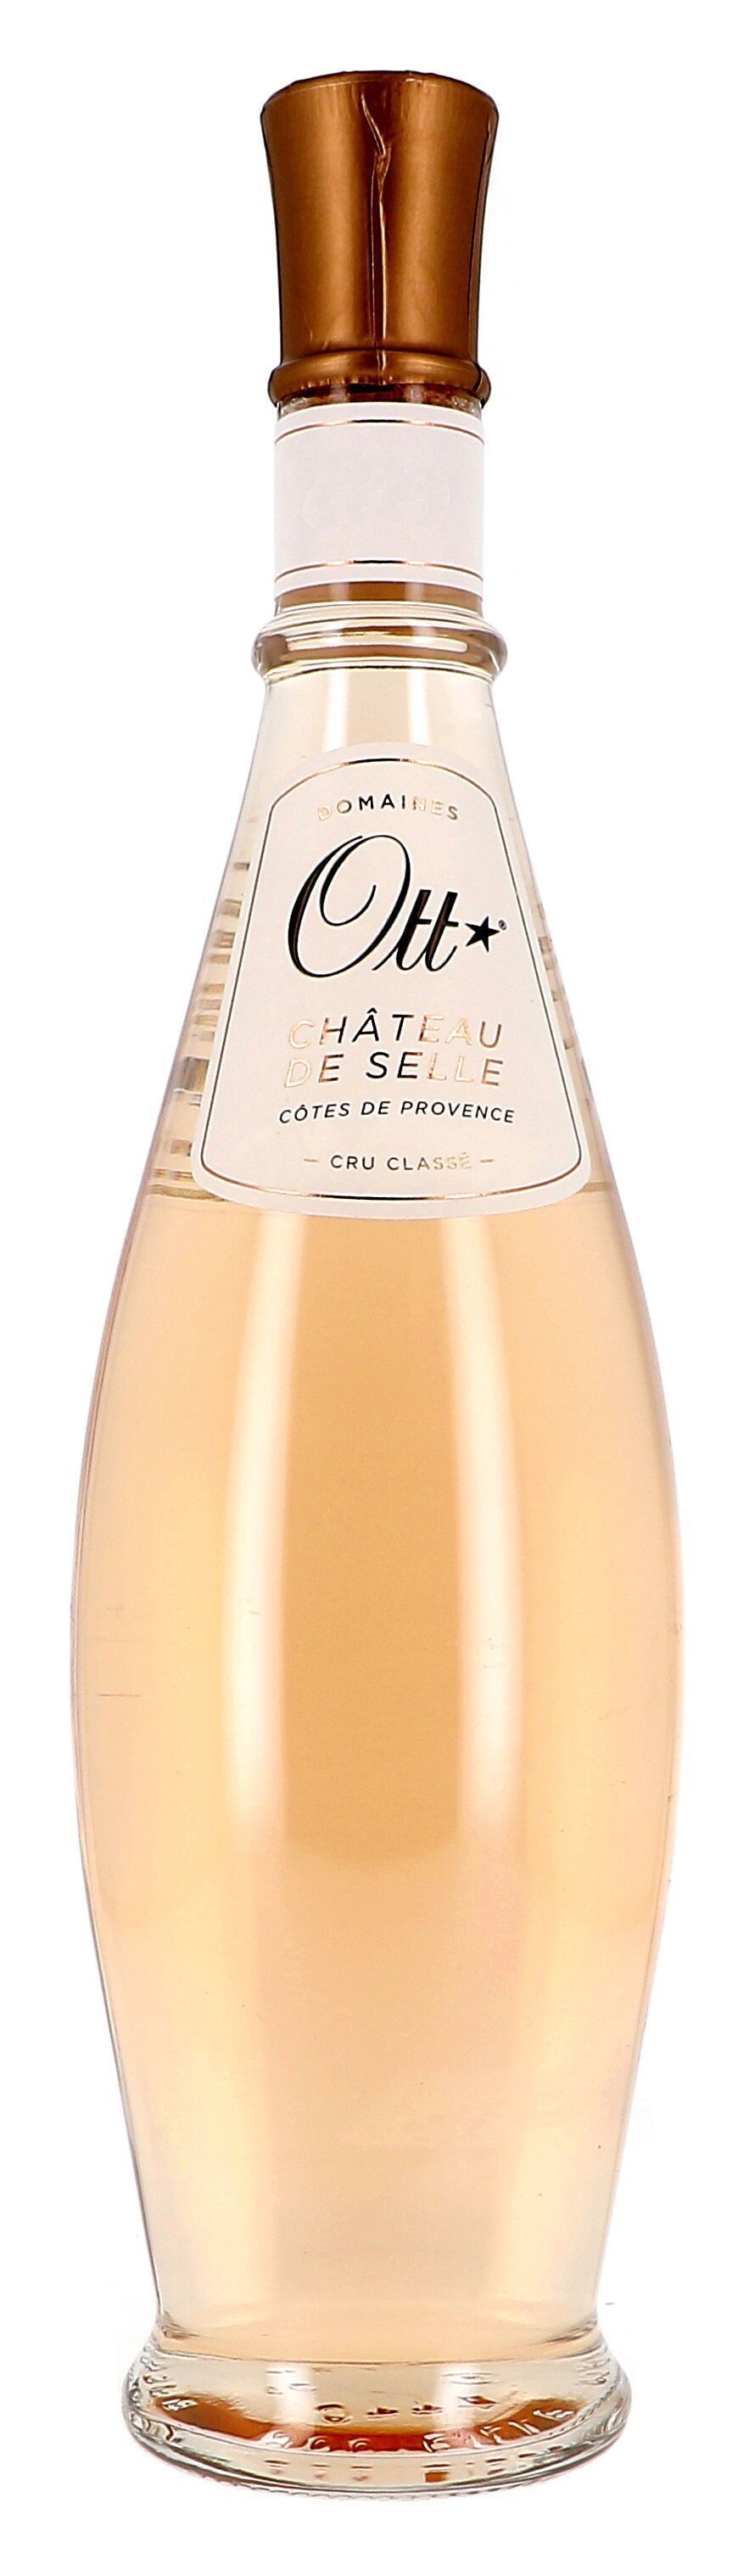 Chateau de Selle Coeur de Grain rosé 75cl 2021 Domaines Ott Cru Classe Cotes de Provence (Wijnen)